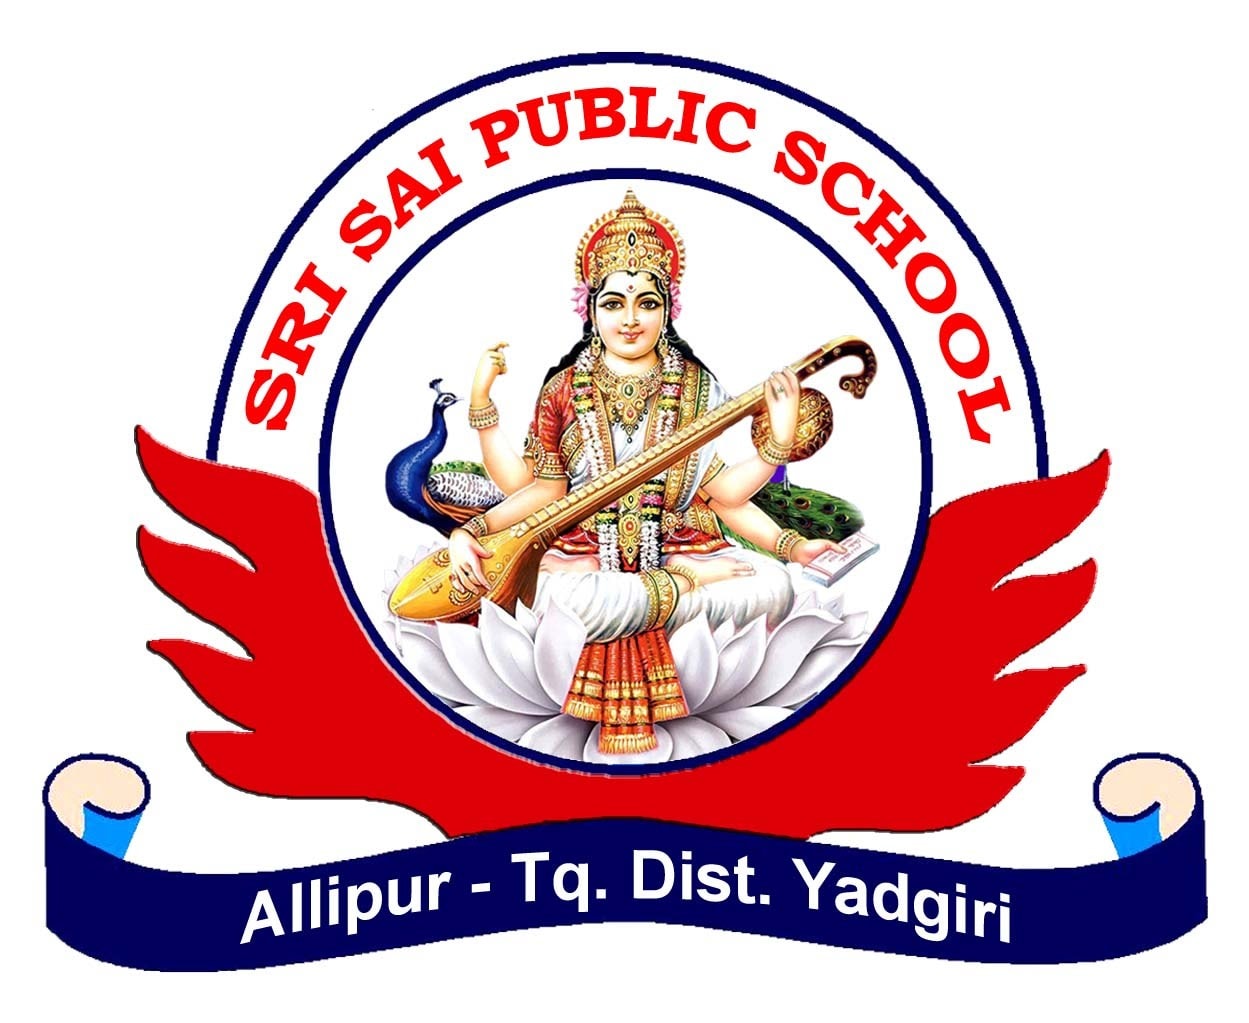 Sri Sai Public School